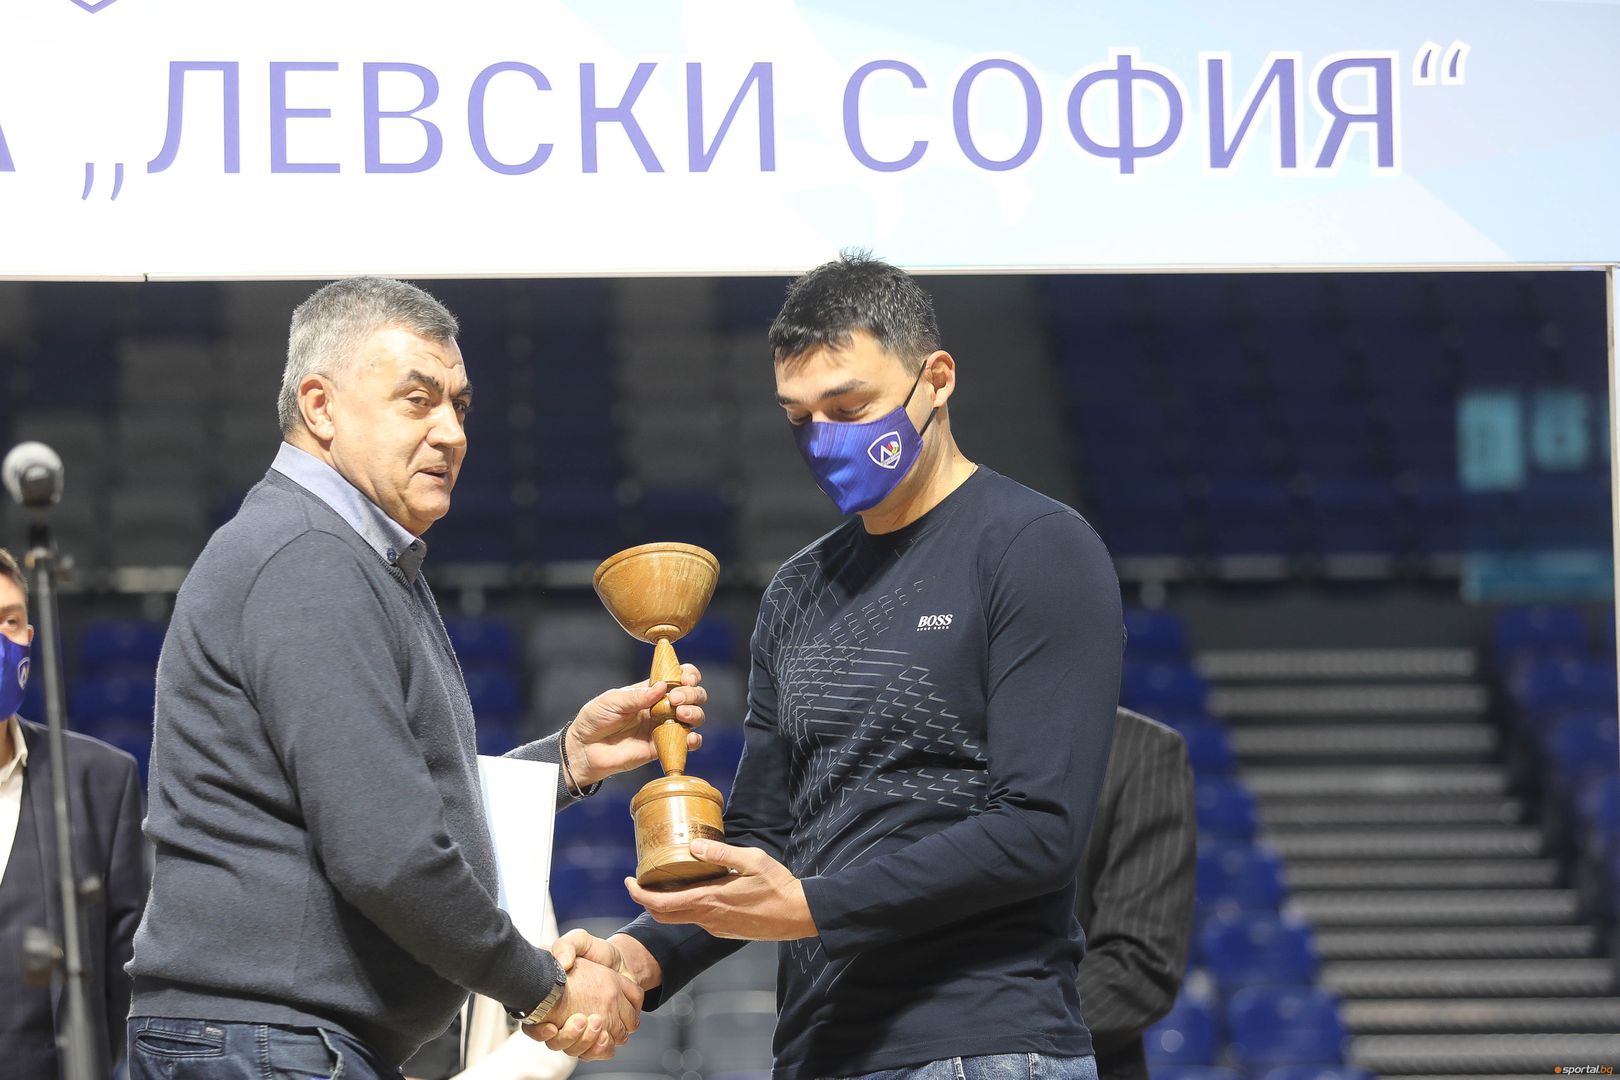 Официално откриване на спортна зала "Левски София"